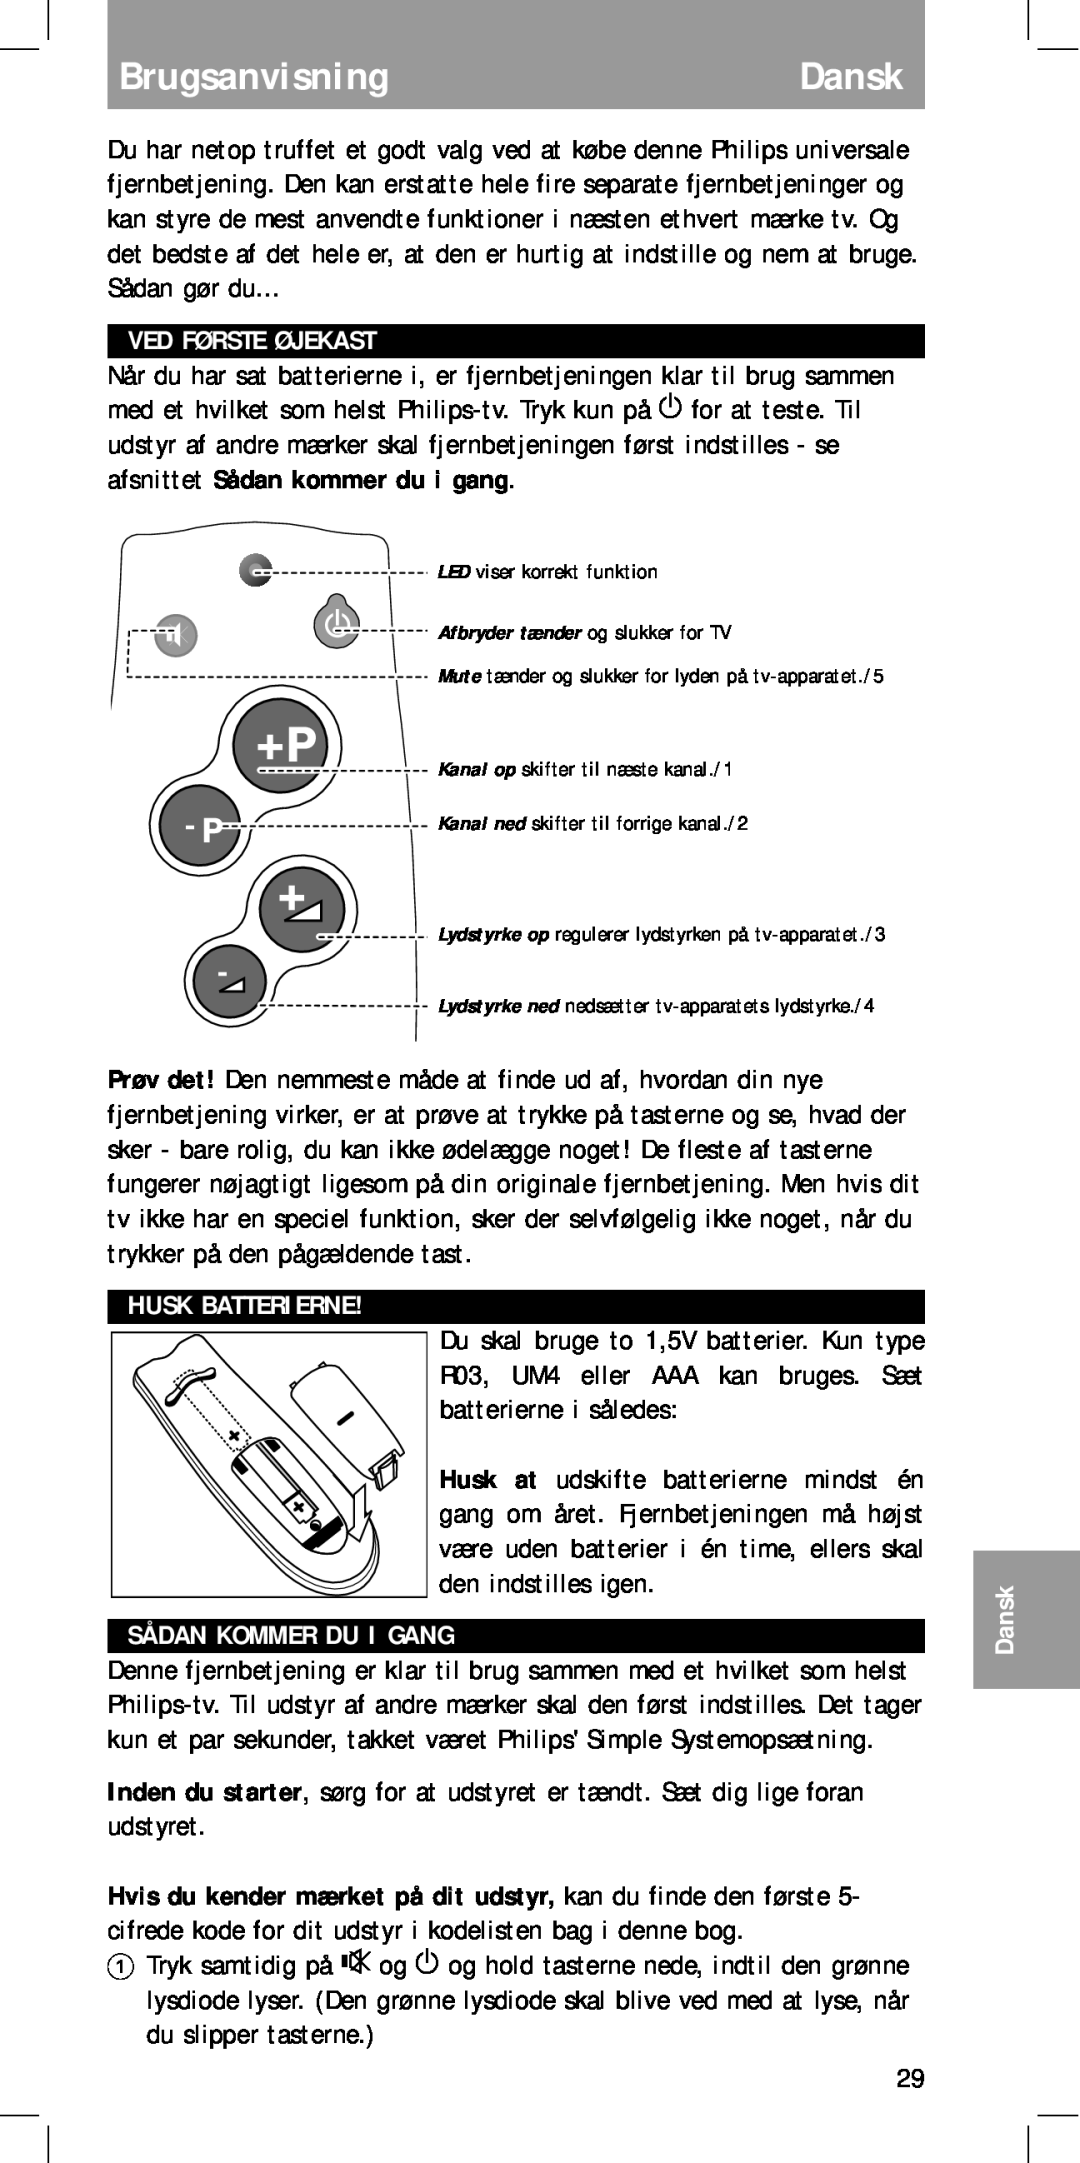 Philips MC-110 manual BrugsanvisningDansk, Ved Første Øjekast, Husk Batterierne, Sådan Kommer Du I Gang 